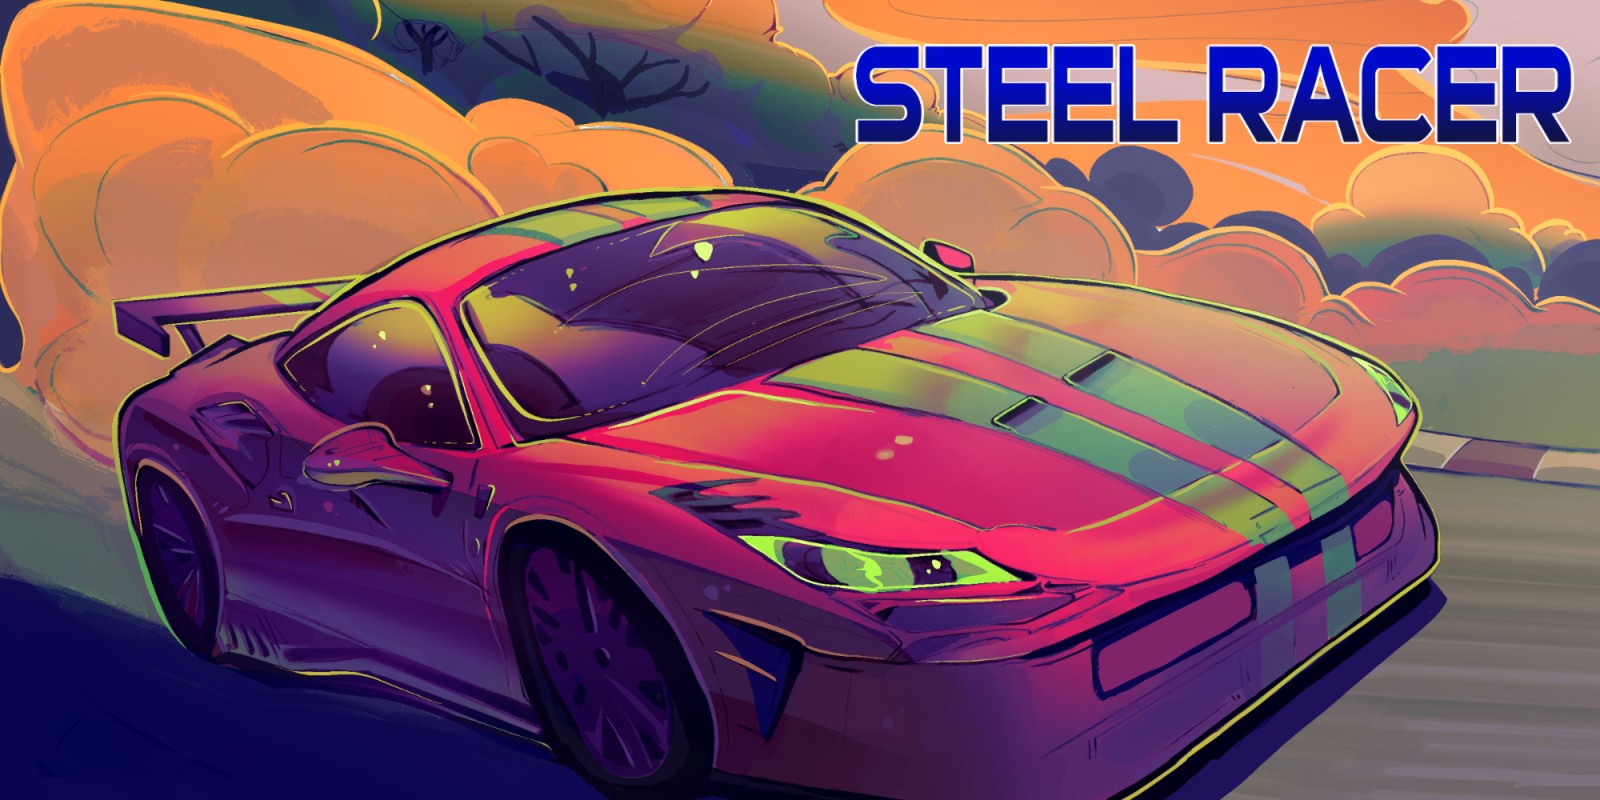 Steel Racer